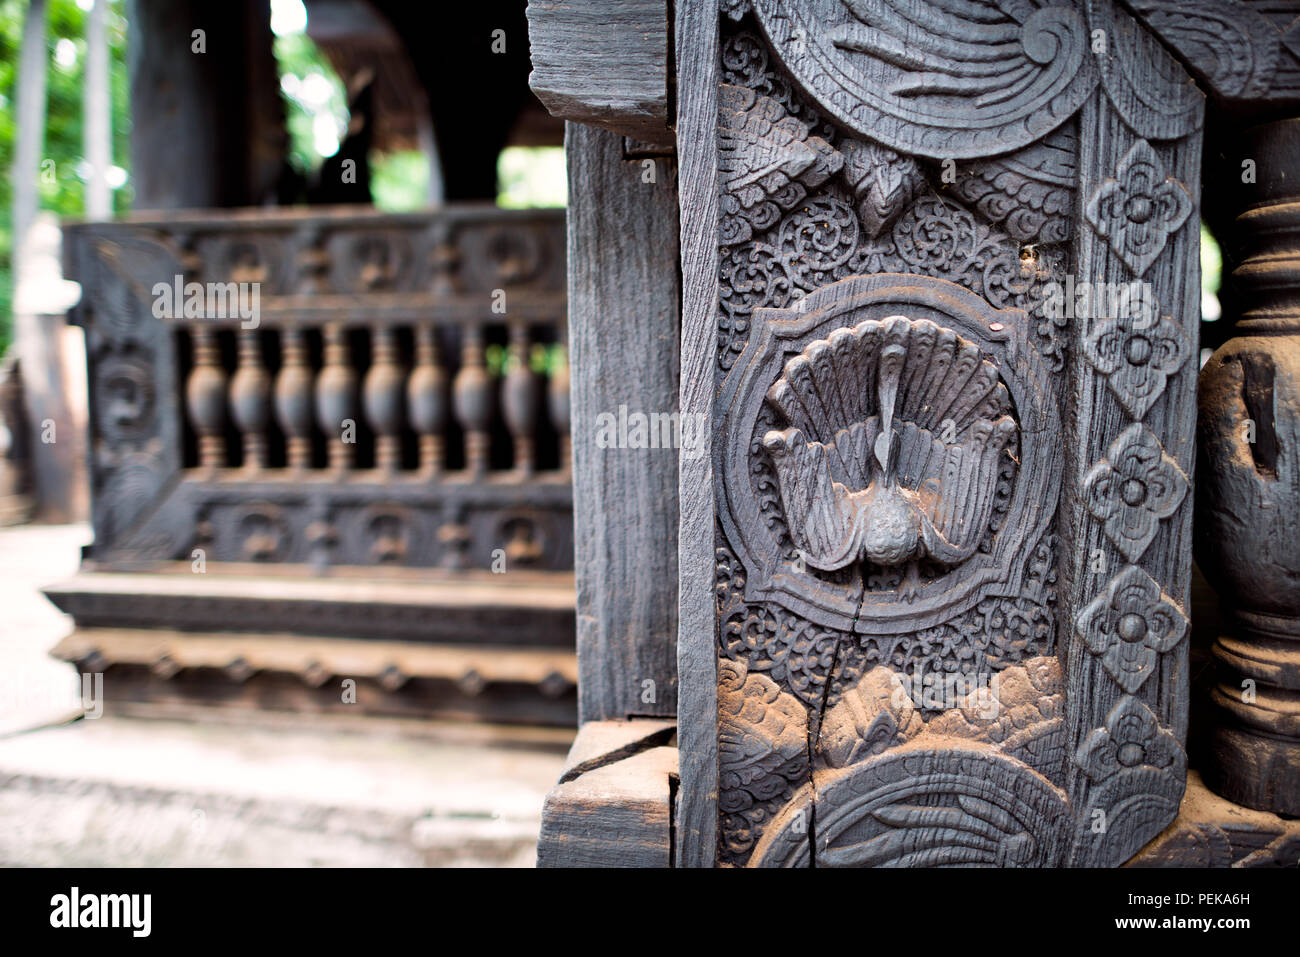 INWA (AVA), Myanmar – komplexe Holzschnitzereien in Teakholz schmücken das Bagaya-Kloster in Inwa, Myanmar. Das Kloster Bagaya (auch bekannt als Bagaya Kyaung) wurde 1834 während der Herrschaft von König Bagyidaw erbaut. Er besteht vollständig aus Teakholz, mit 267 riesigen Teakholzpfählen, von denen der größte 60 m hoch und 9 m Umfang ist. Es liegt in der alten königlichen Hauptstadt von Inwa (Ava), nicht weit von Mandalay. Stockfoto